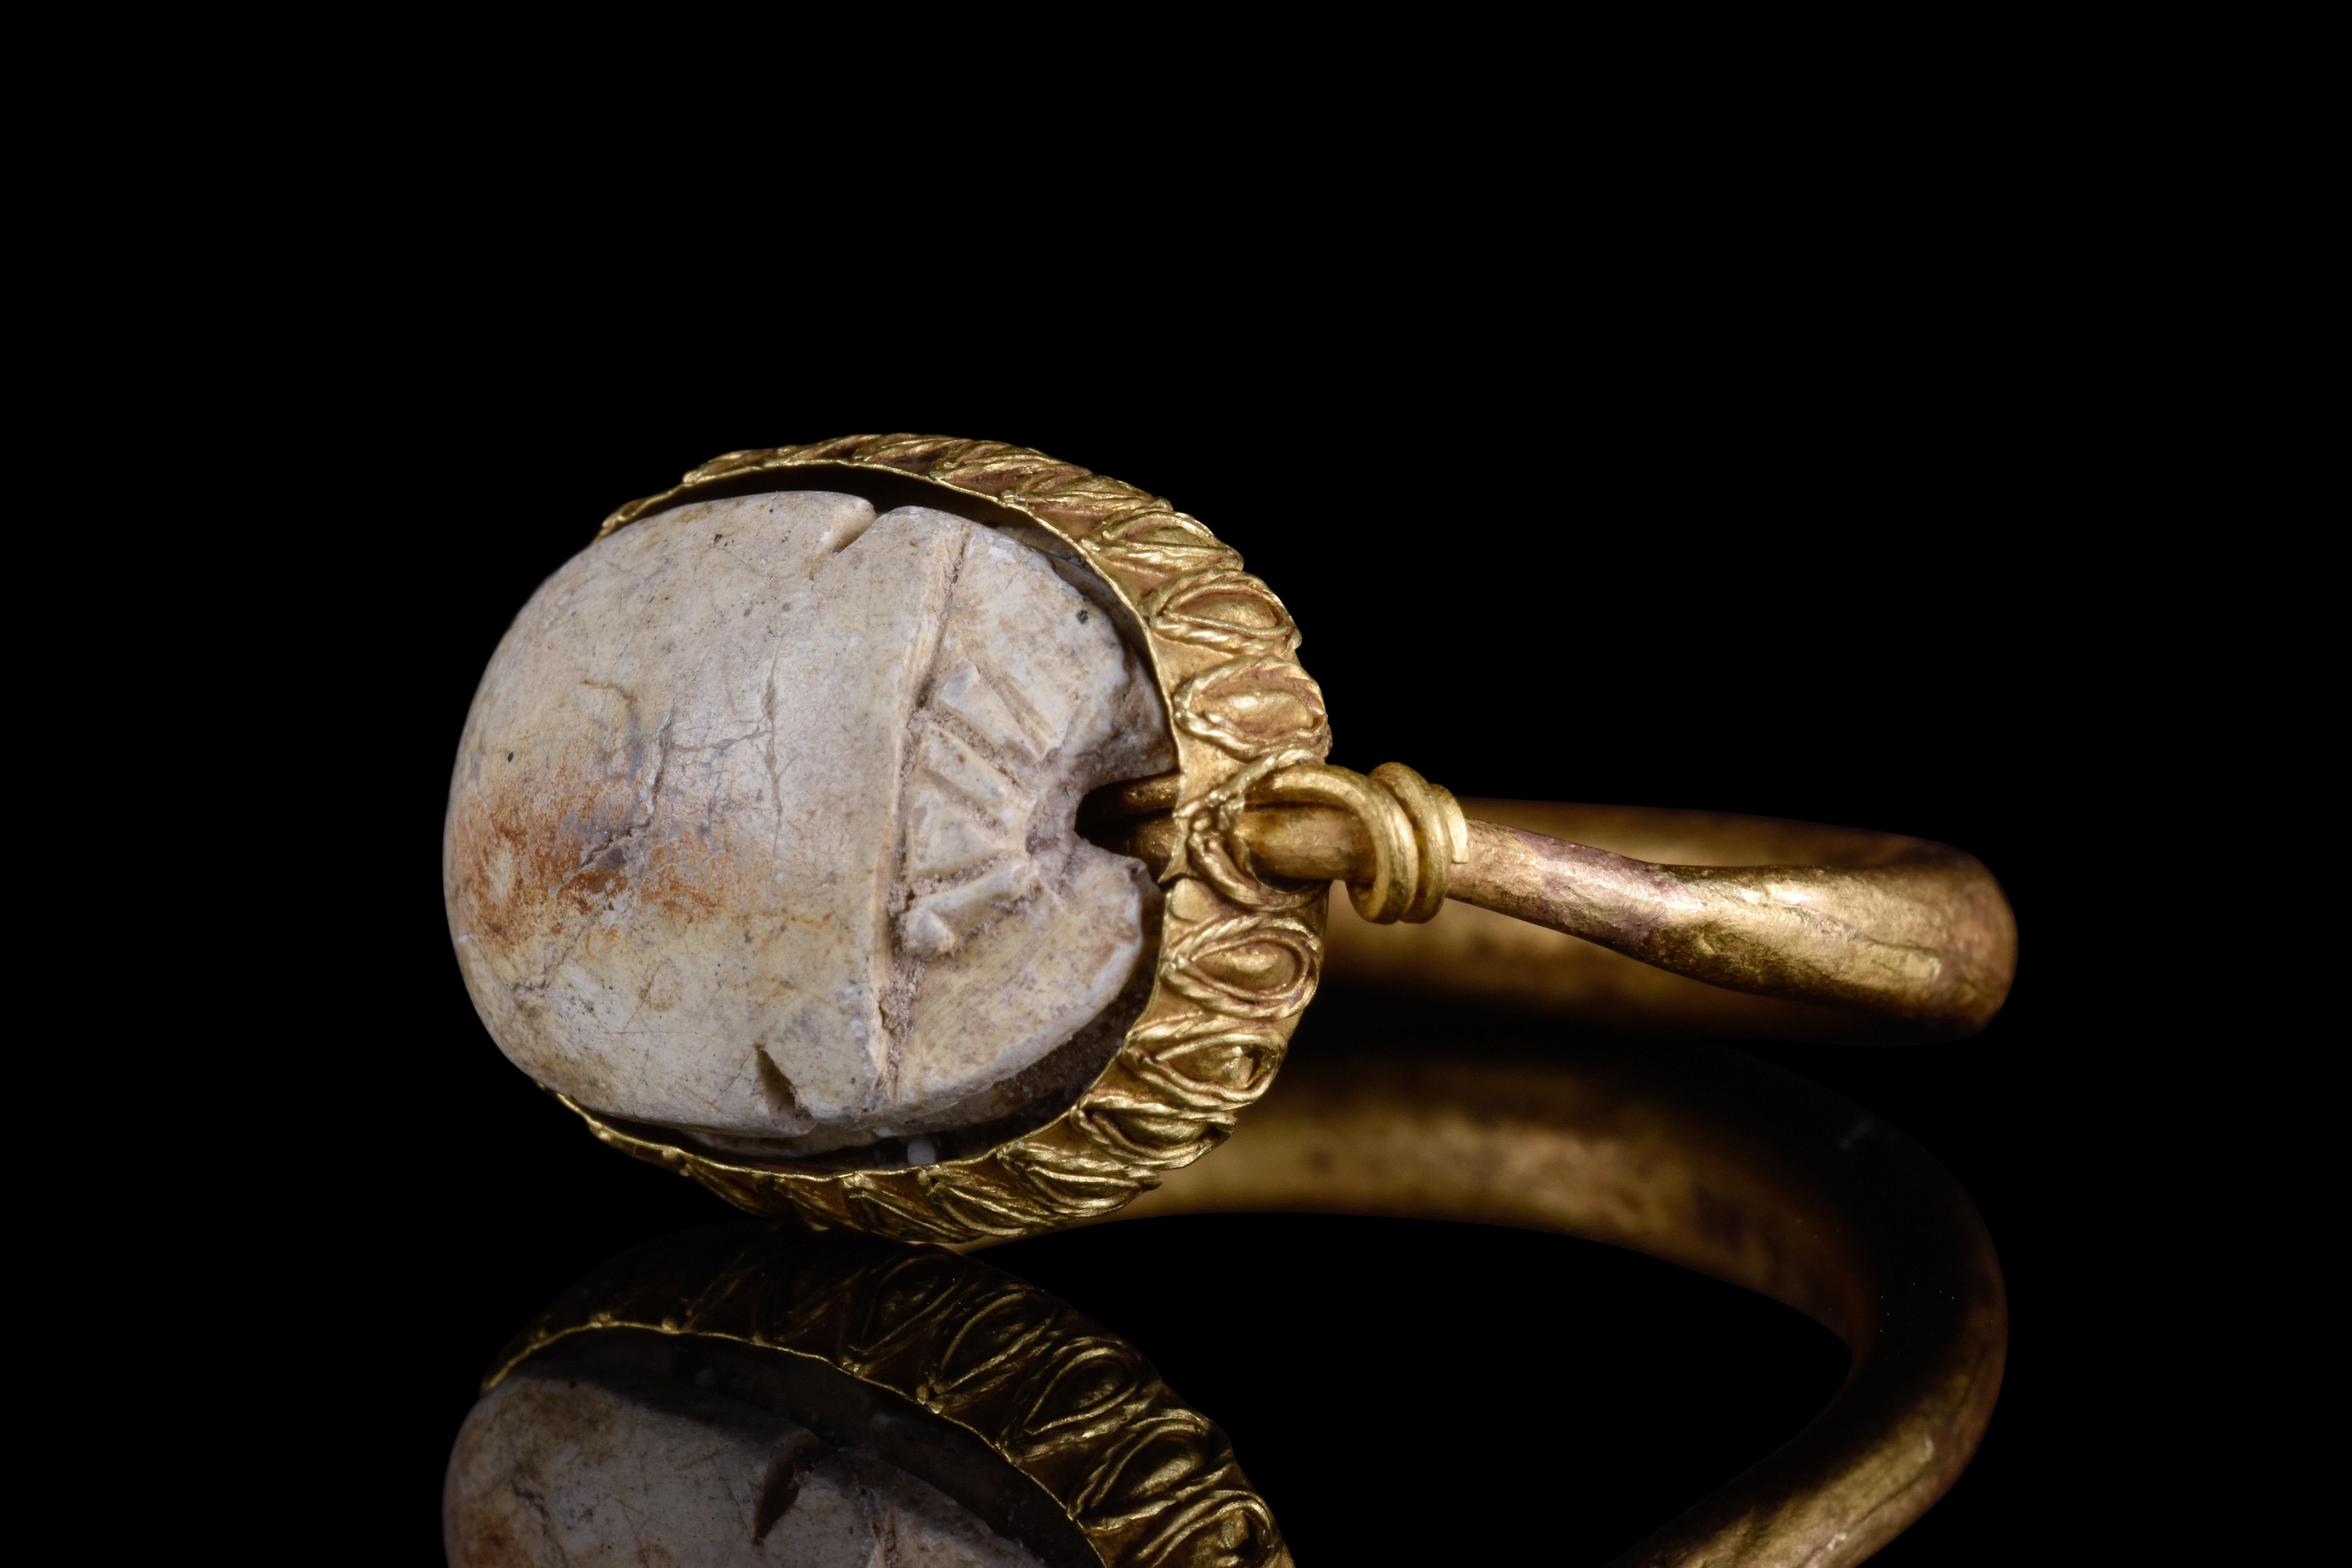 Scarabée égyptien en stéatite enchâssé dans un anneau pivotant en or massif, peut-être plus récent. Symbole de renaissance et de protection, le scarabée est orné de six serpents sacrés, représentant l'autorité divine. La bague a un design simple en